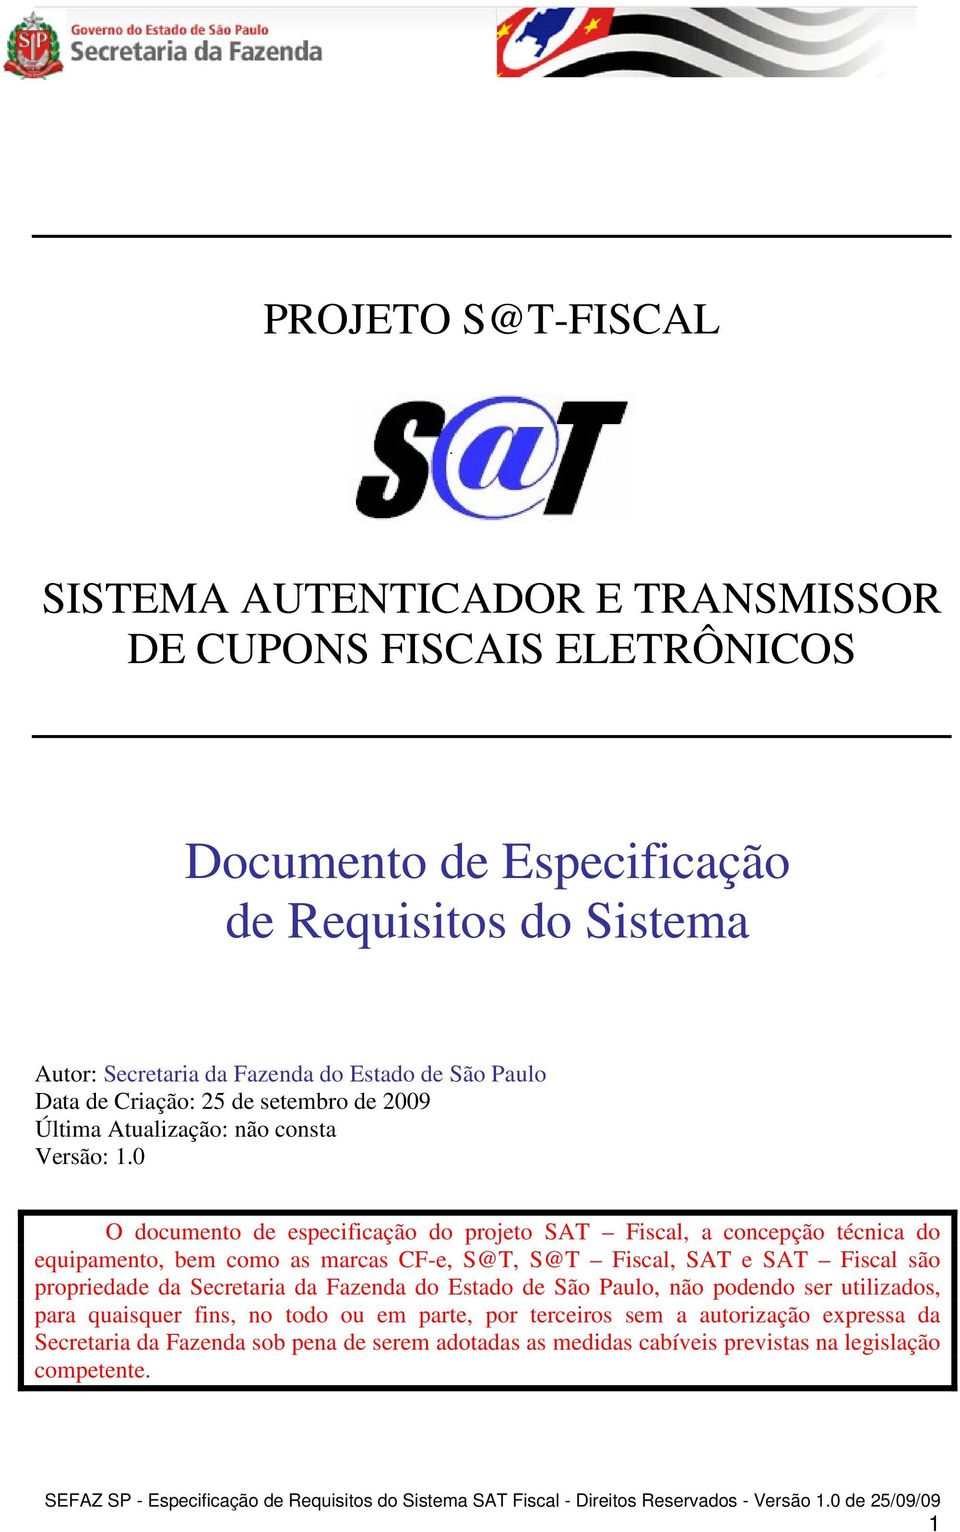 0 O documento de especificação do projeto SAT Fiscal, a concepção técnica do equipamento, bem como as marcas CF-e, S@T, S@T Fiscal, SAT e SAT Fiscal são propriedade da